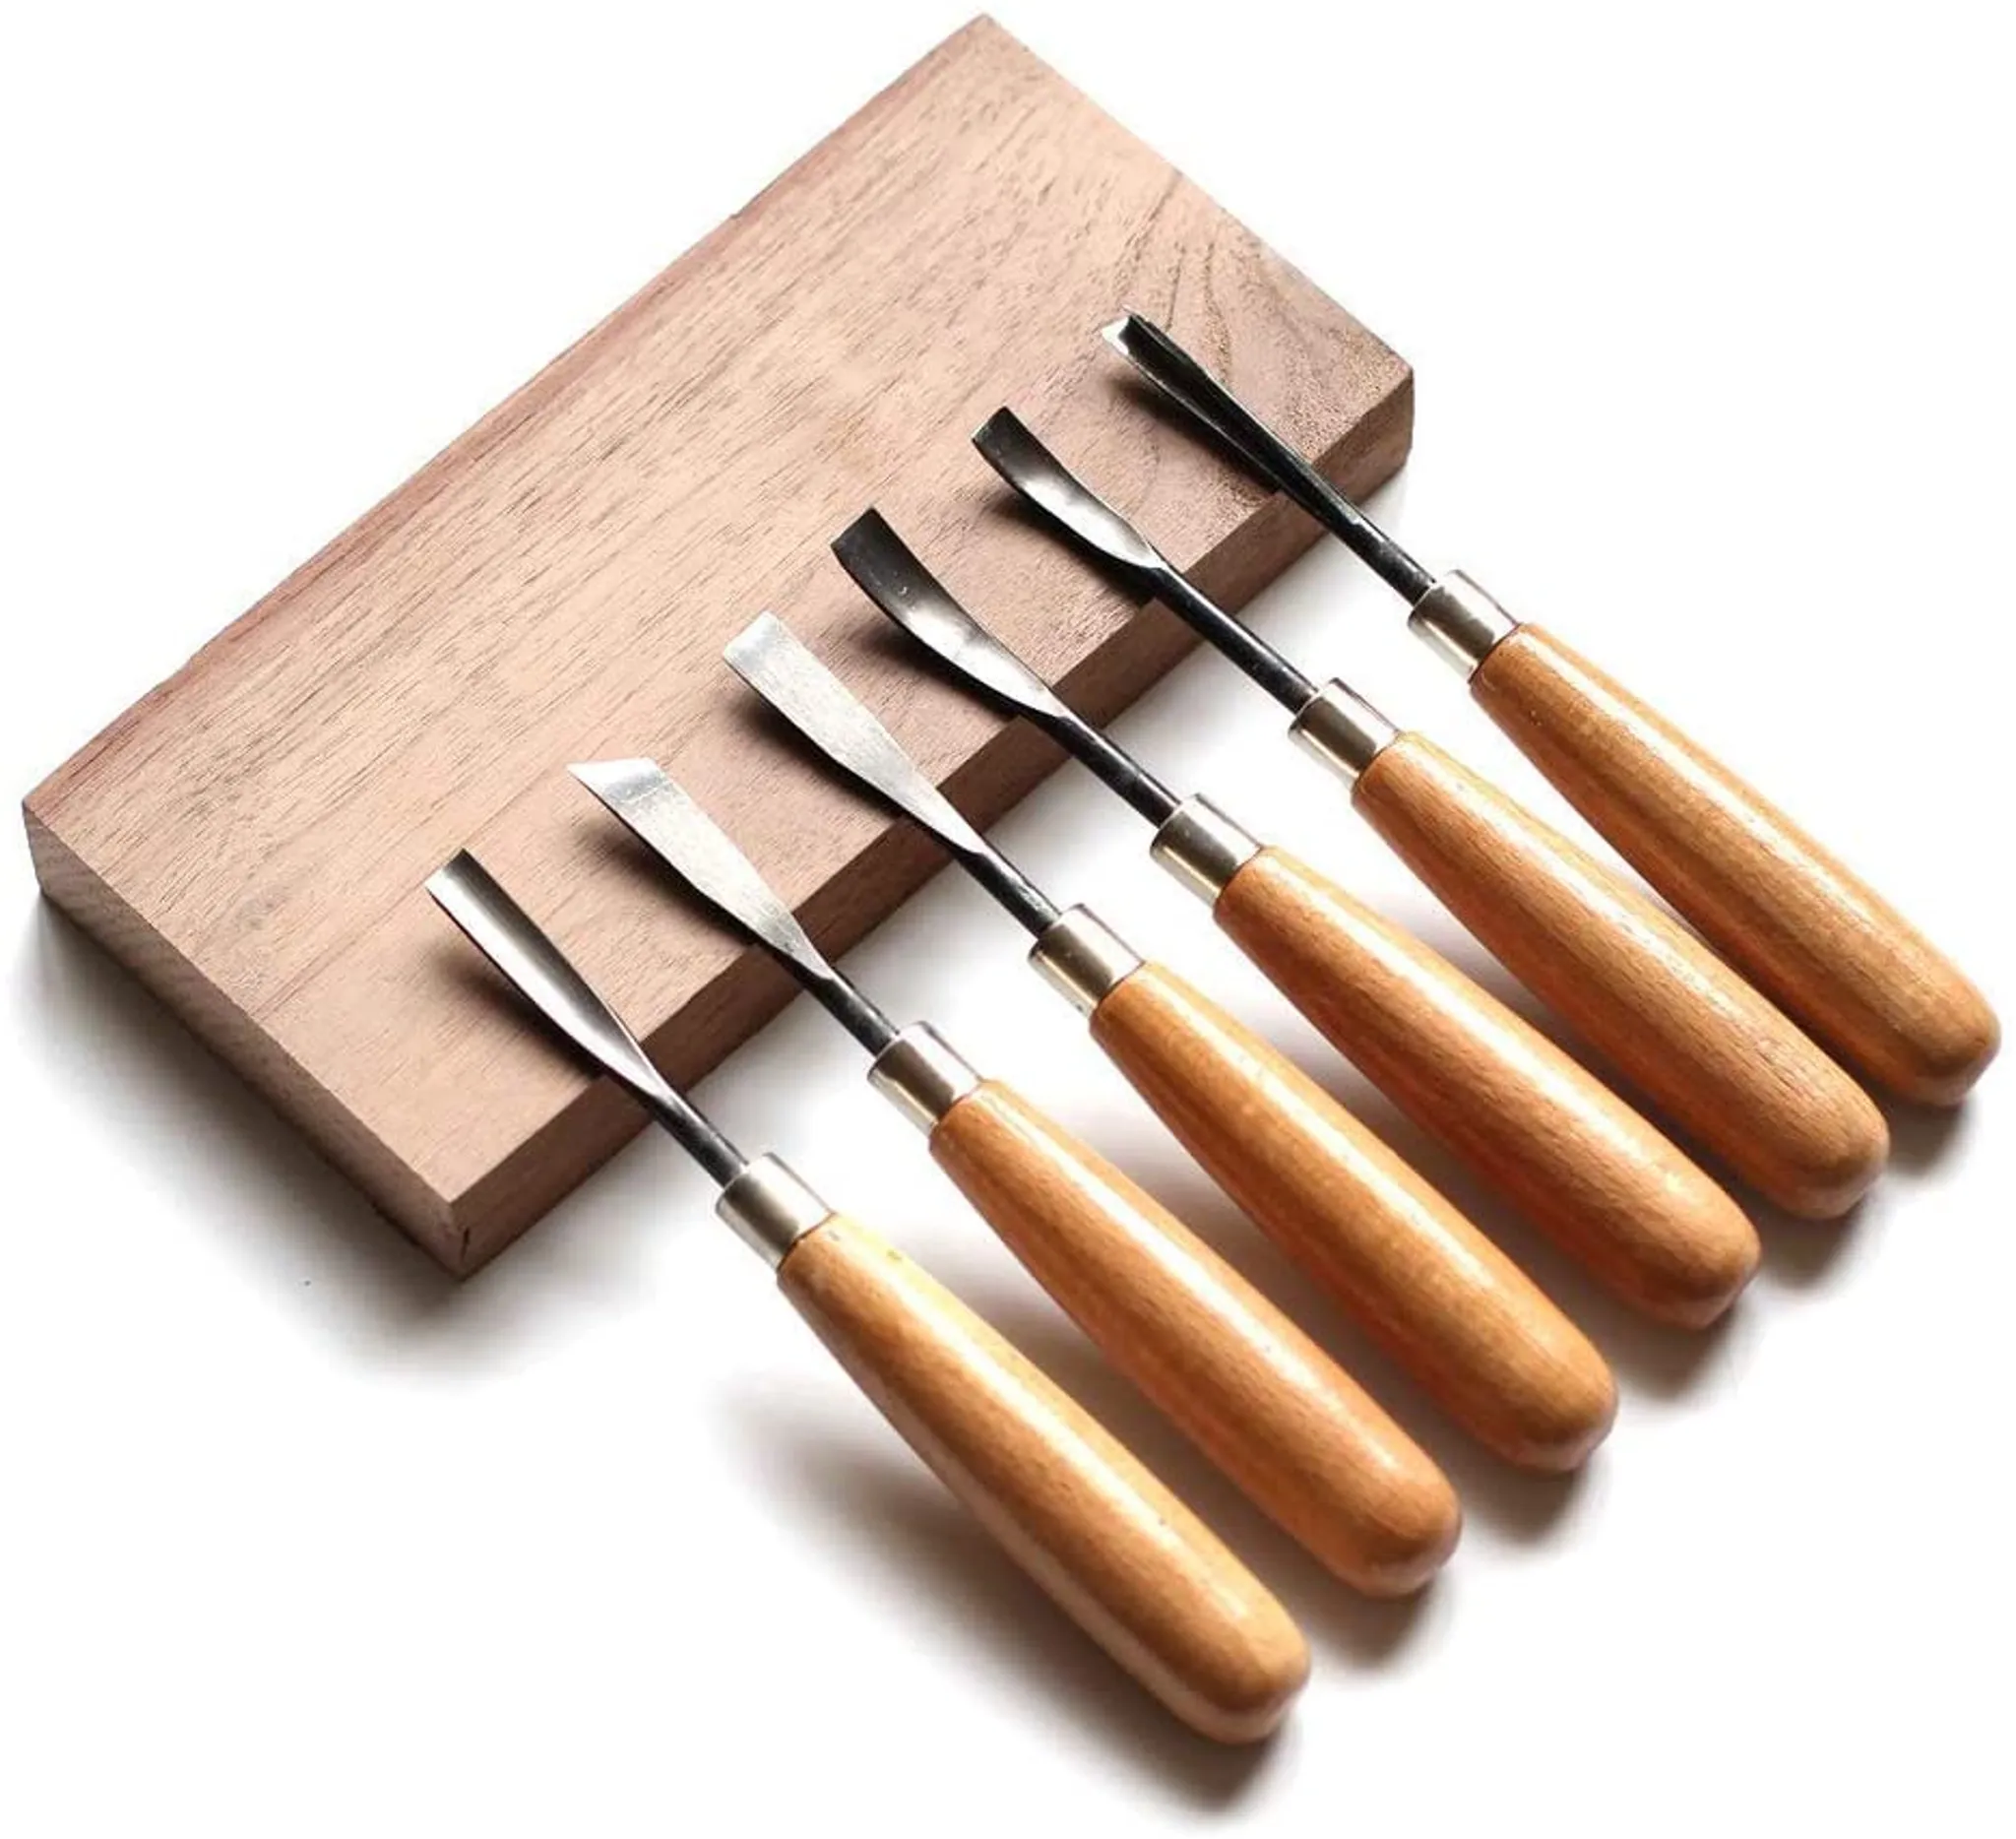 Holz Meißel Set 6 Stücke Stechbeitel Set, Garten & Heimwerken Baumarkt Werkzeuge Handwerkzeuge Schnitzmesser 